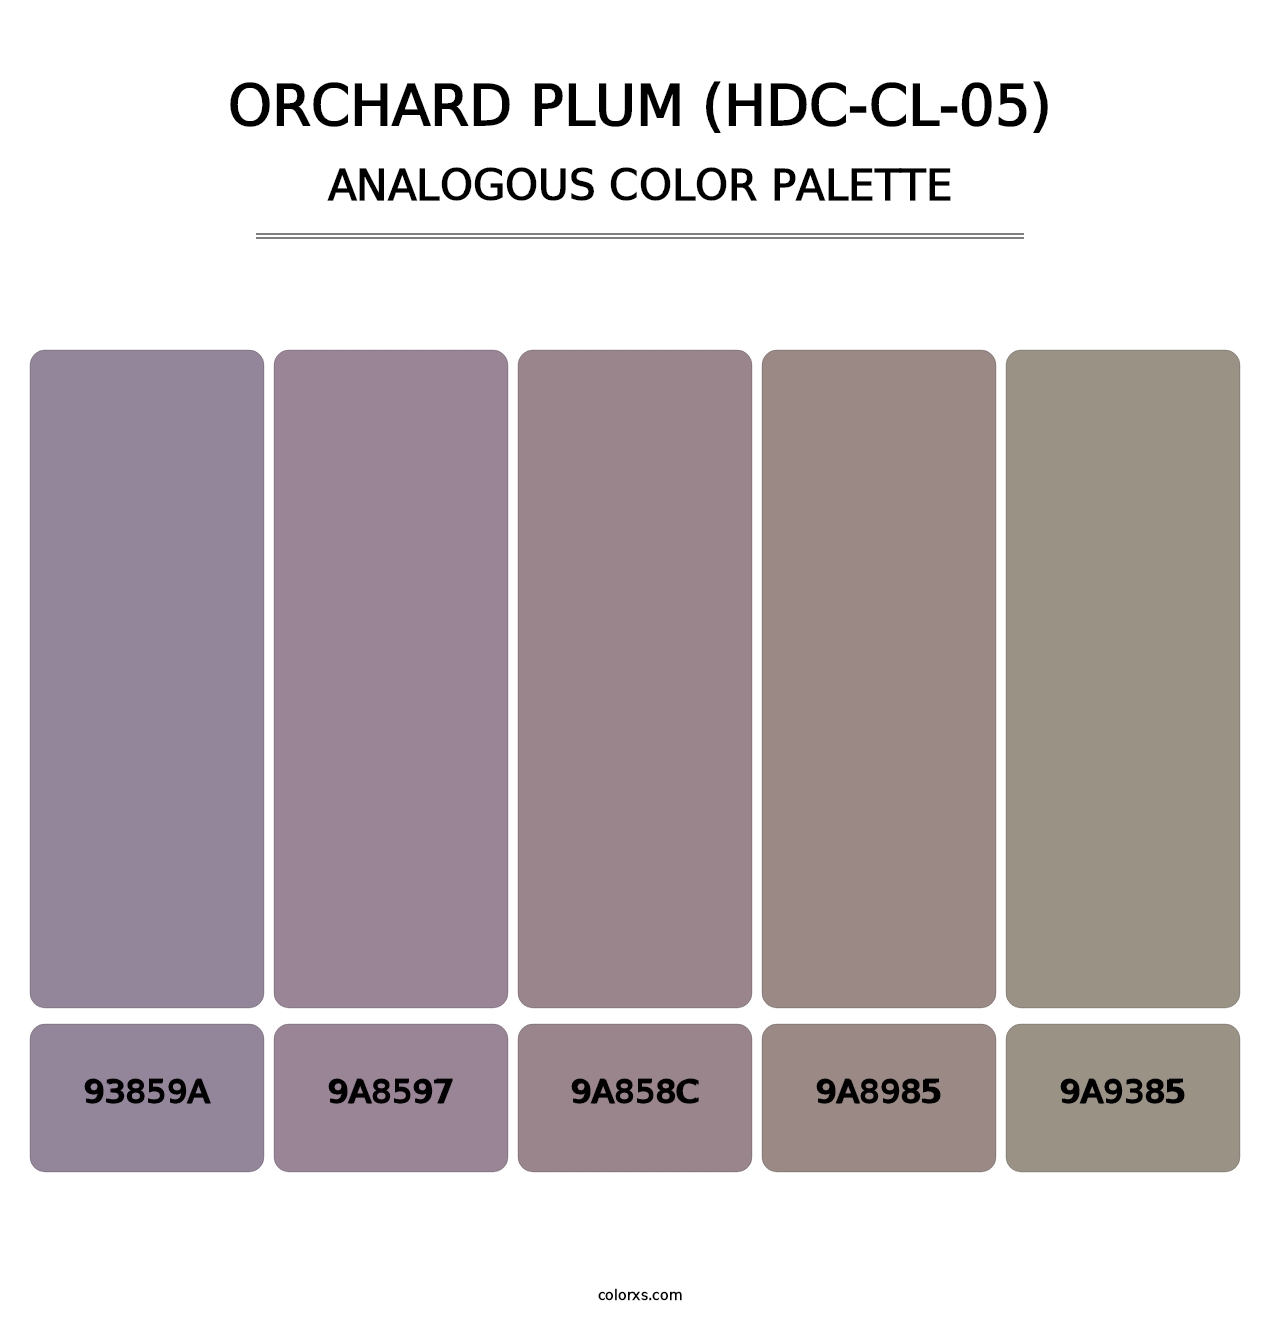 Orchard Plum (HDC-CL-05) - Analogous Color Palette